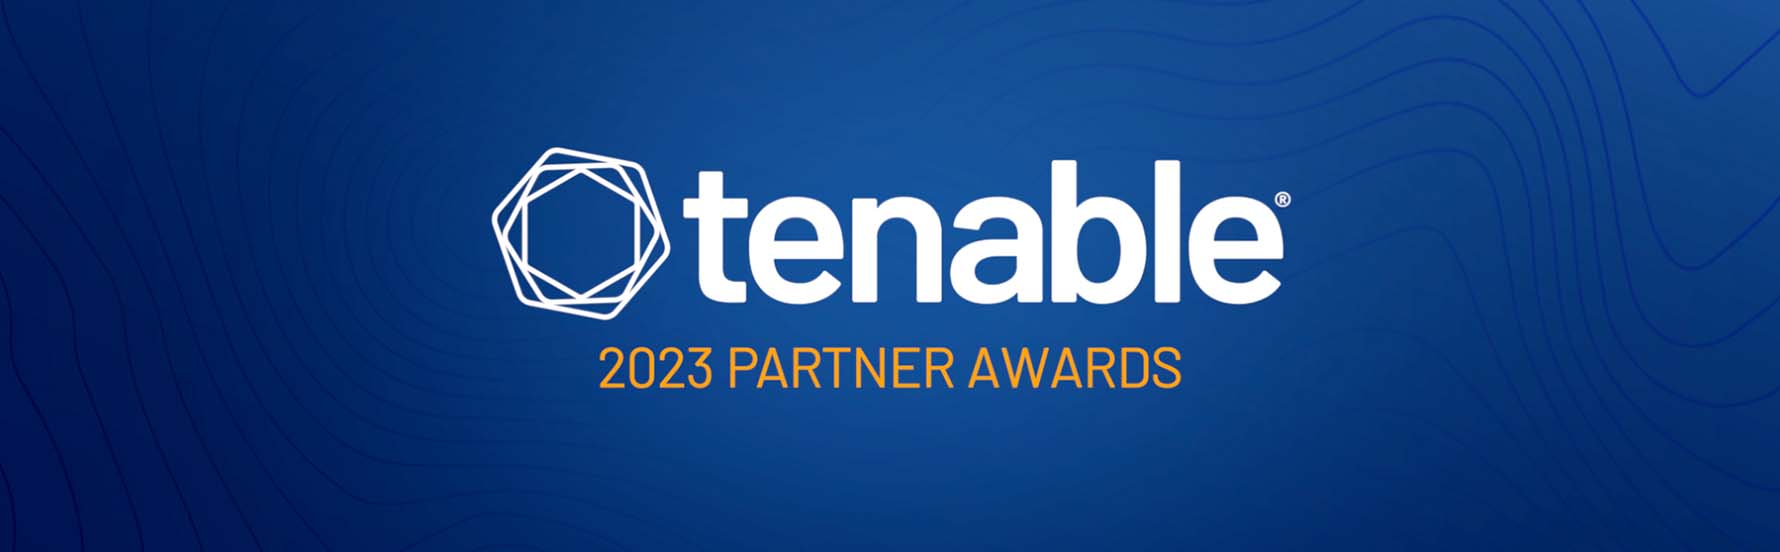 Tenable Partner Awards 2023